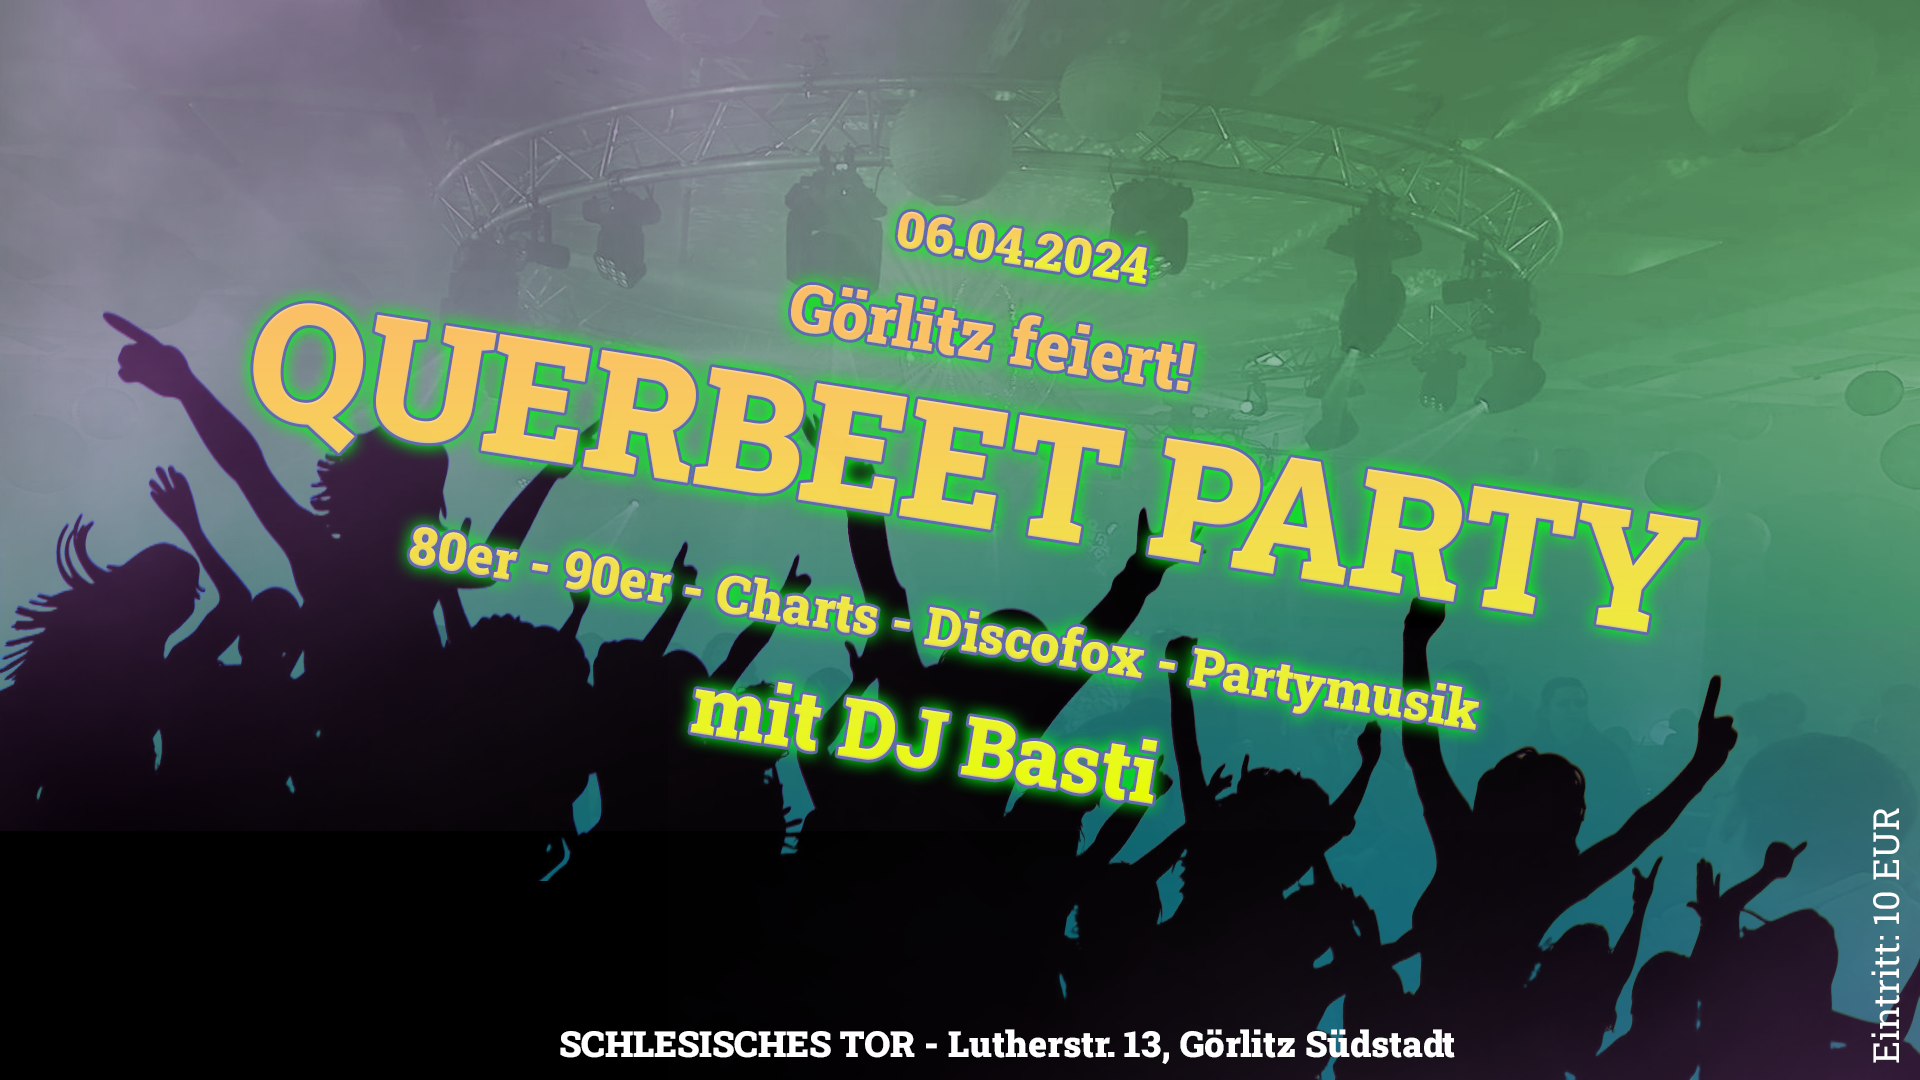 Görlitz feiert! Querbeet-Party 06.04.2024